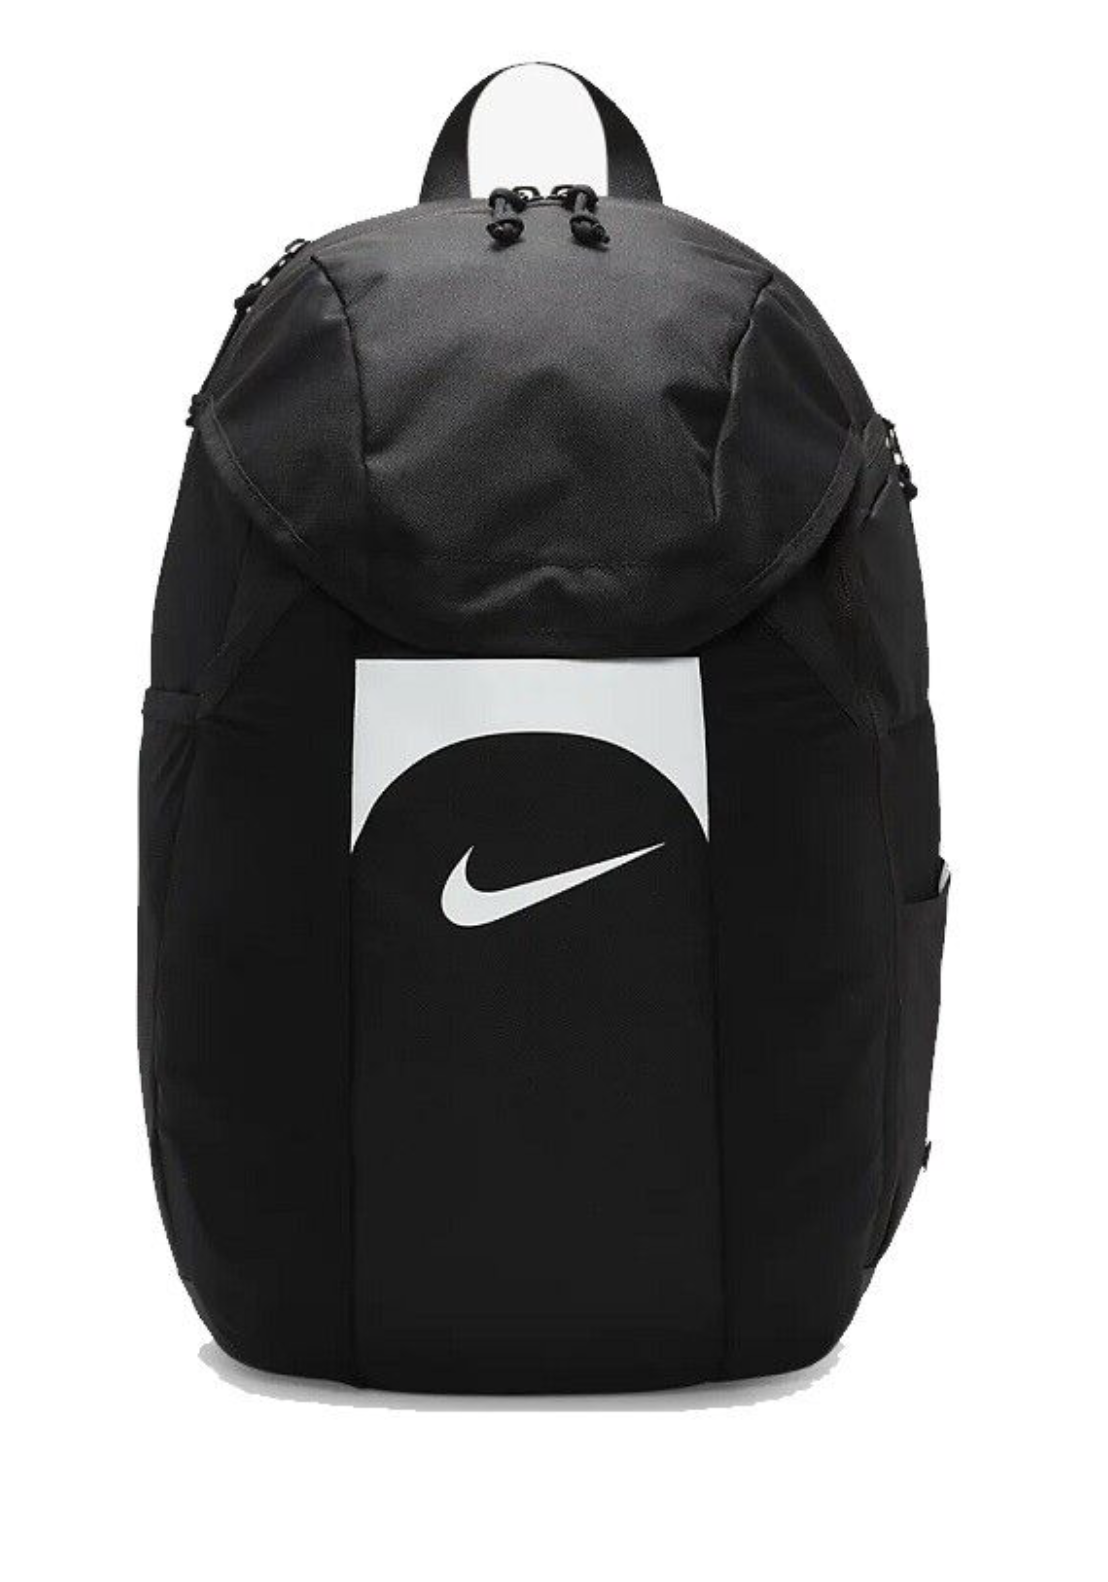 Nike Academy Team Rucksack schwarz weiß